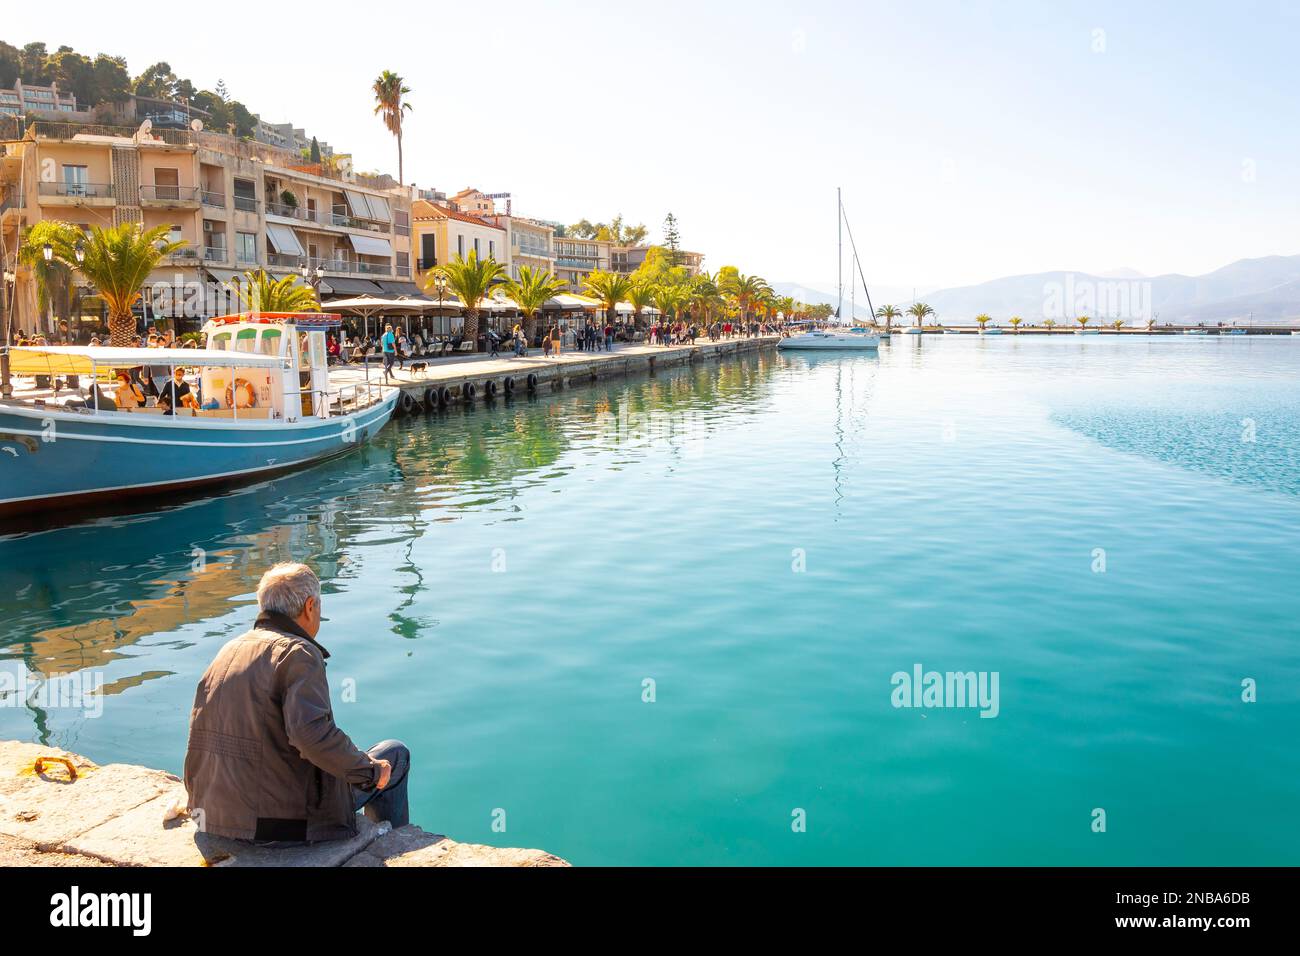 Un pescatore greco guarda i turisti dal porto nel pittoresco villaggio sul mare di Nafplio, in Grecia. Foto Stock